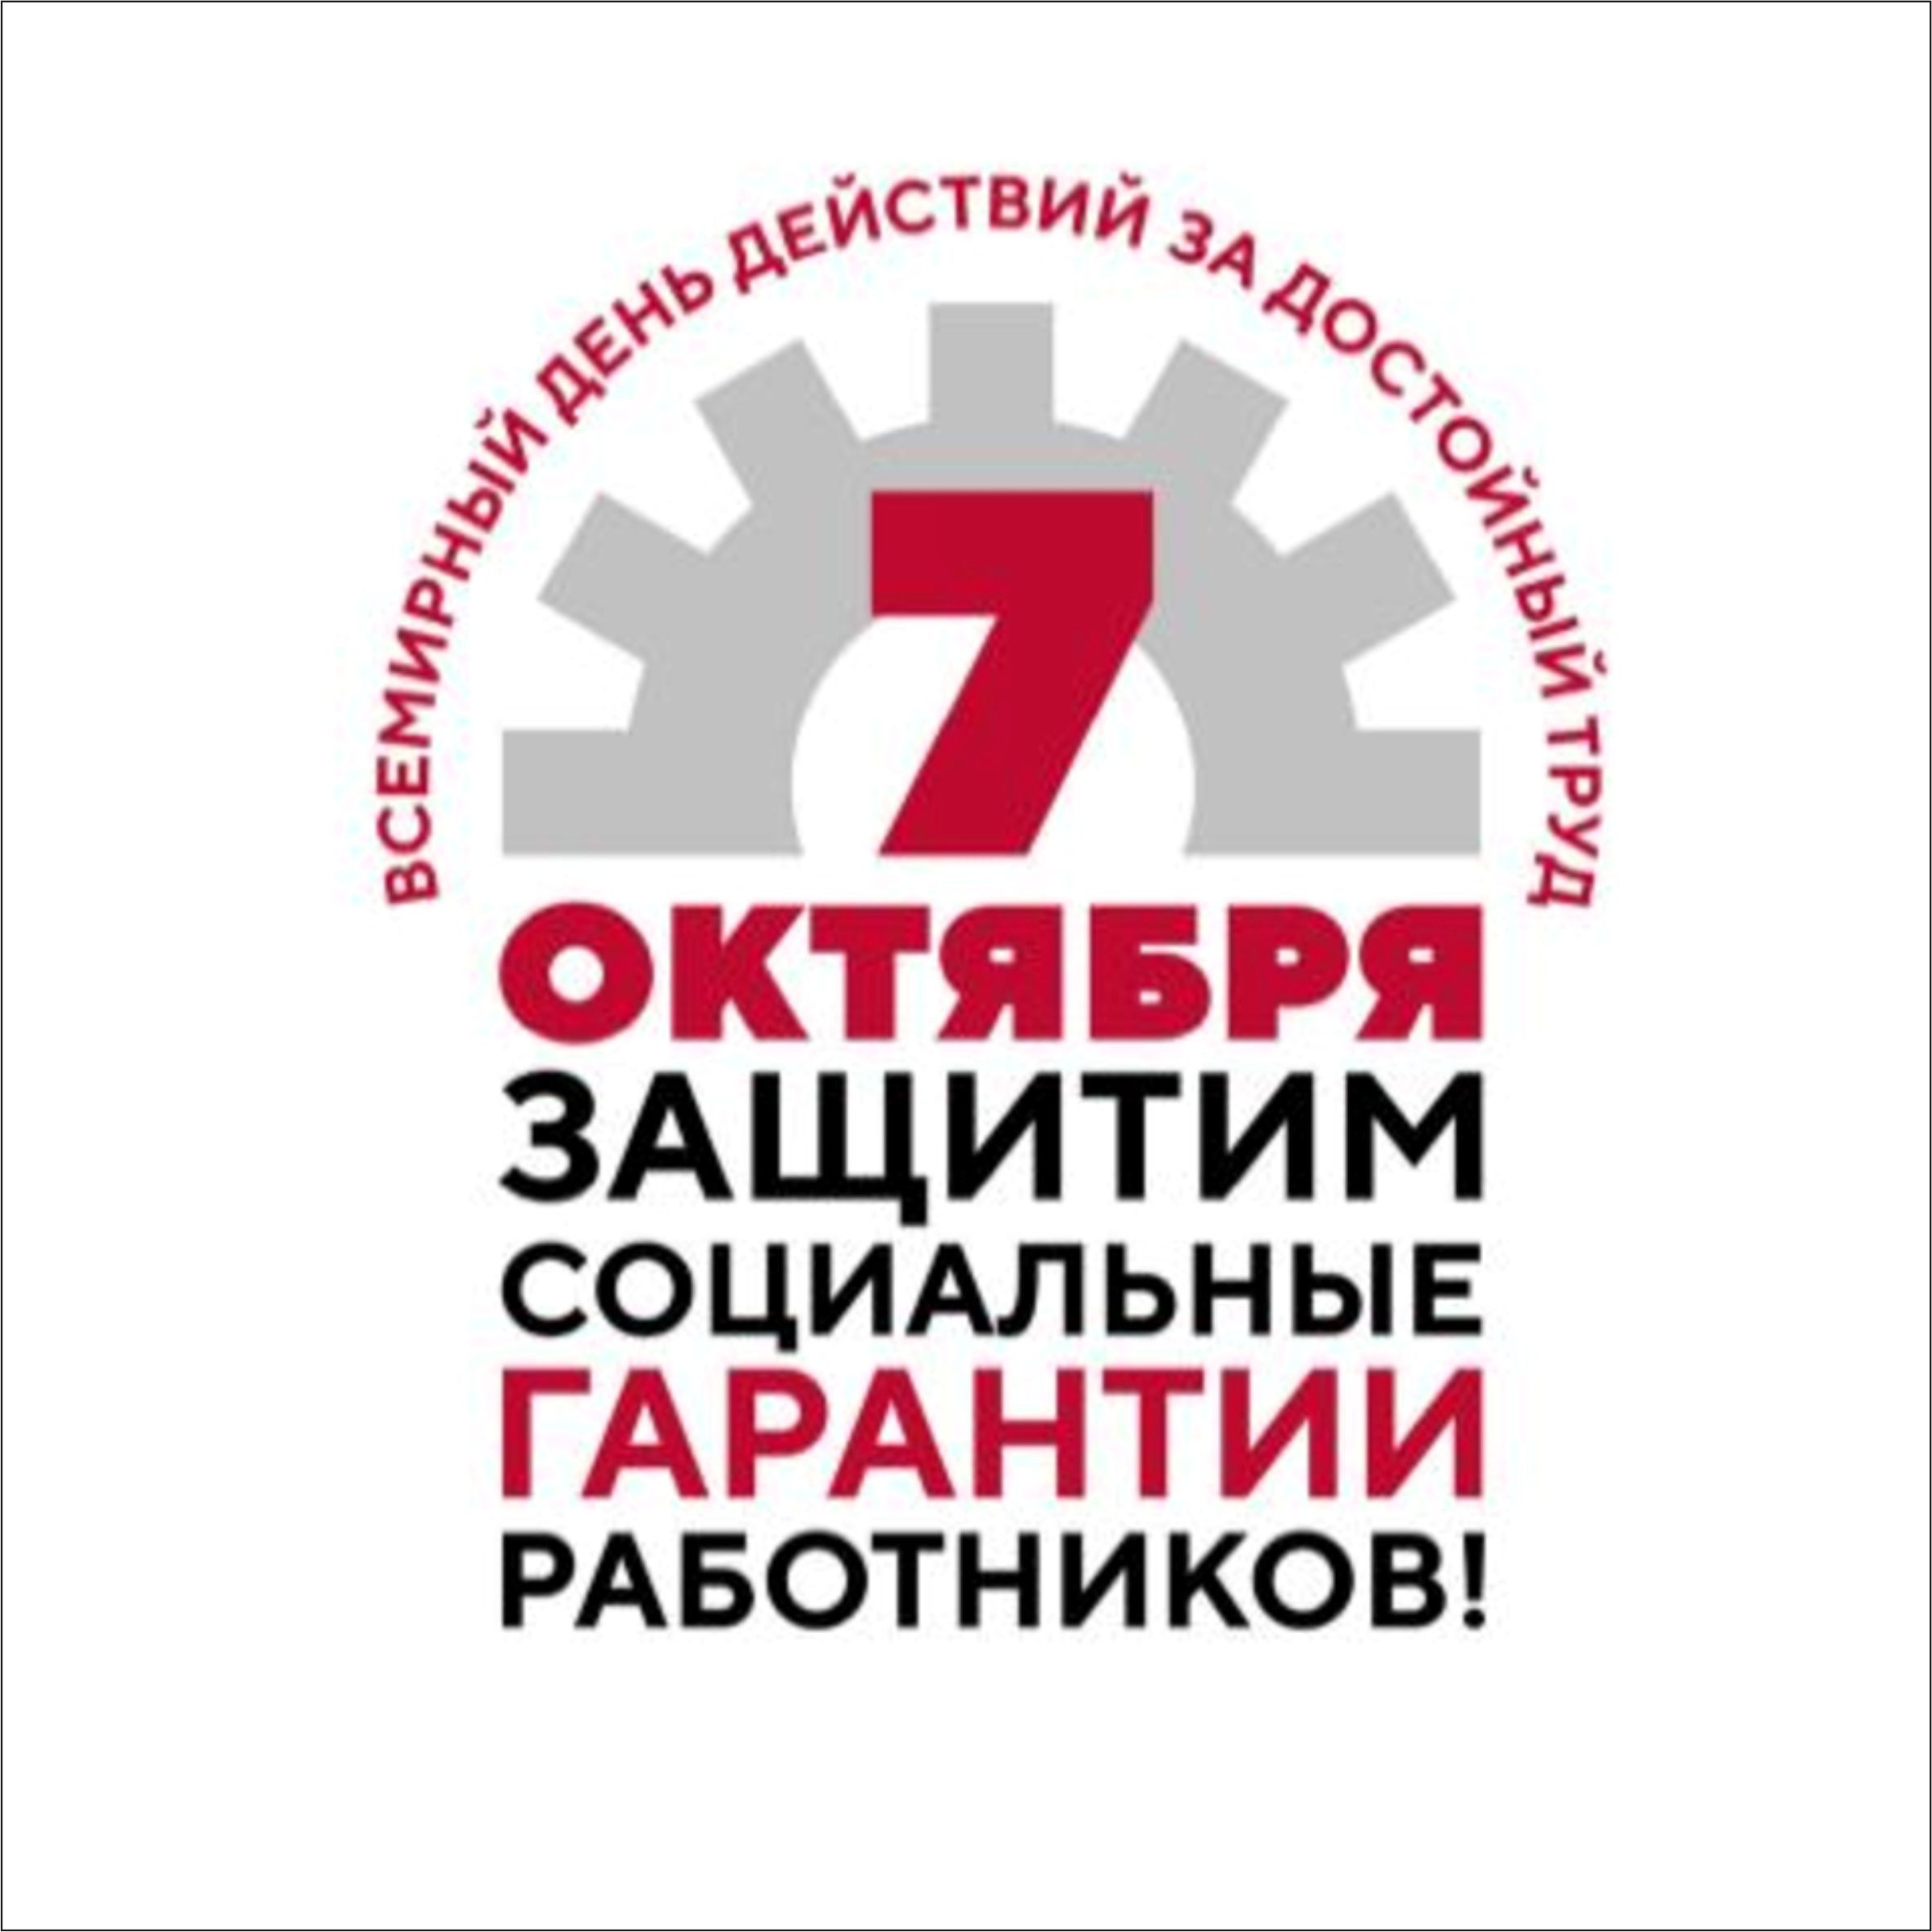 Всероссийская акция профсоюзов в рамках Всемирного дня действий «За достойный труд»